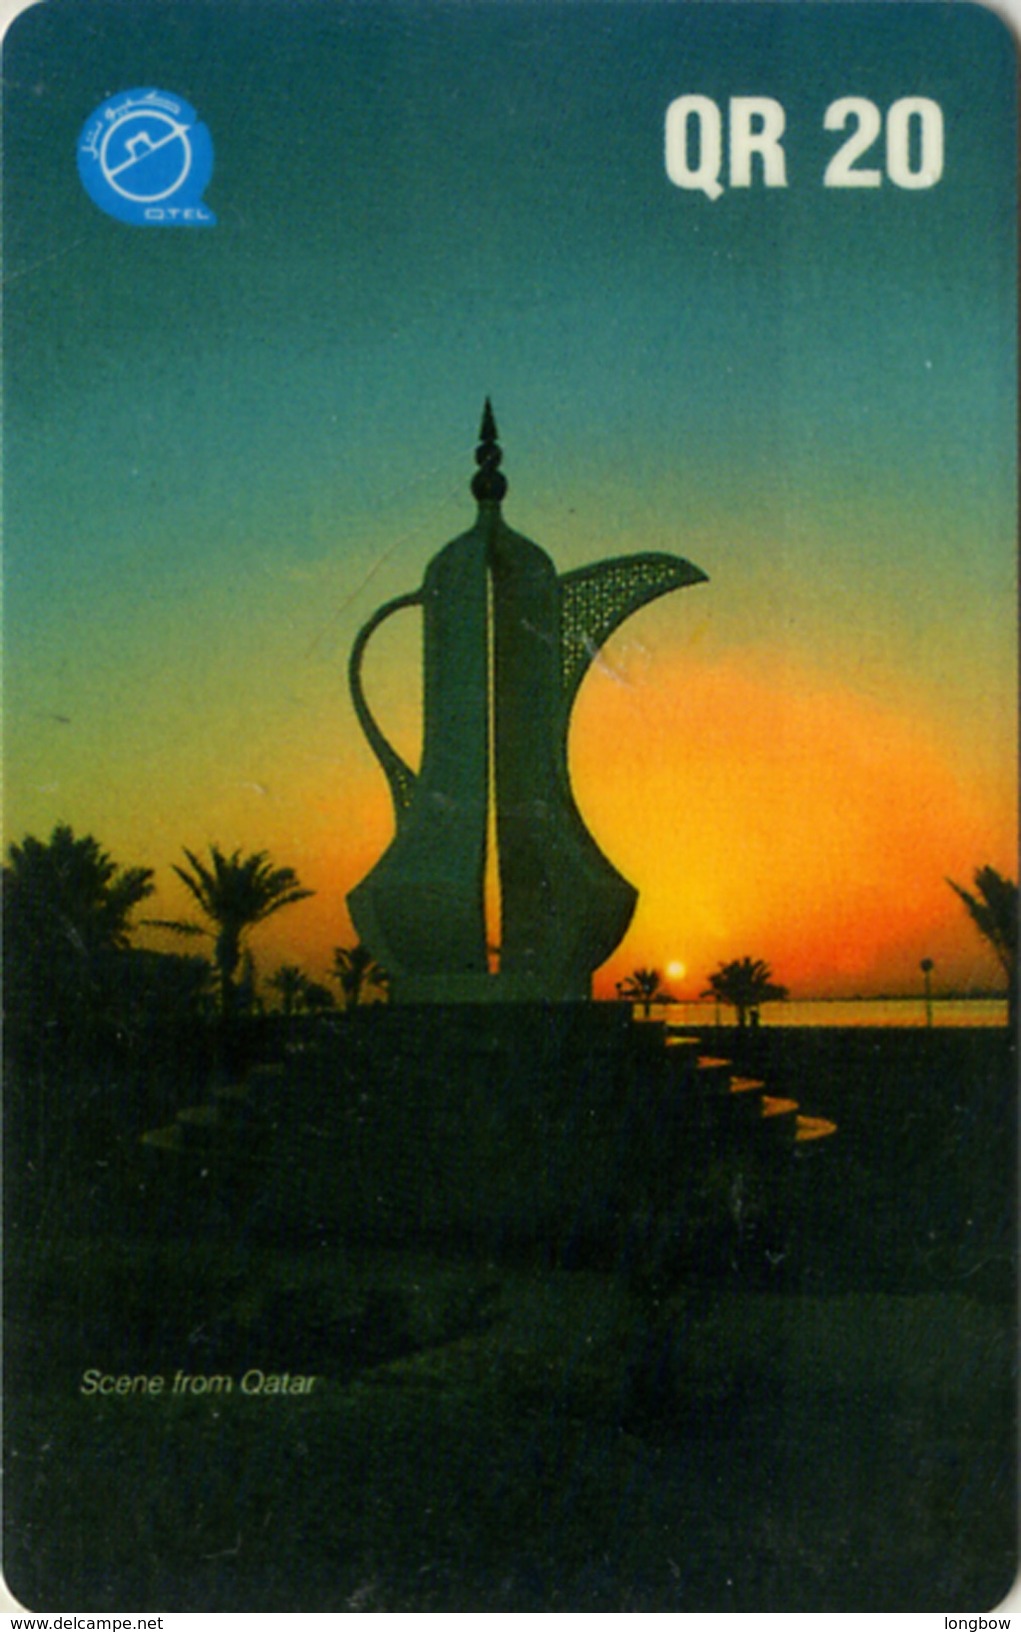 QATAR-36-1995-DALLA AT SUNSET - Qatar